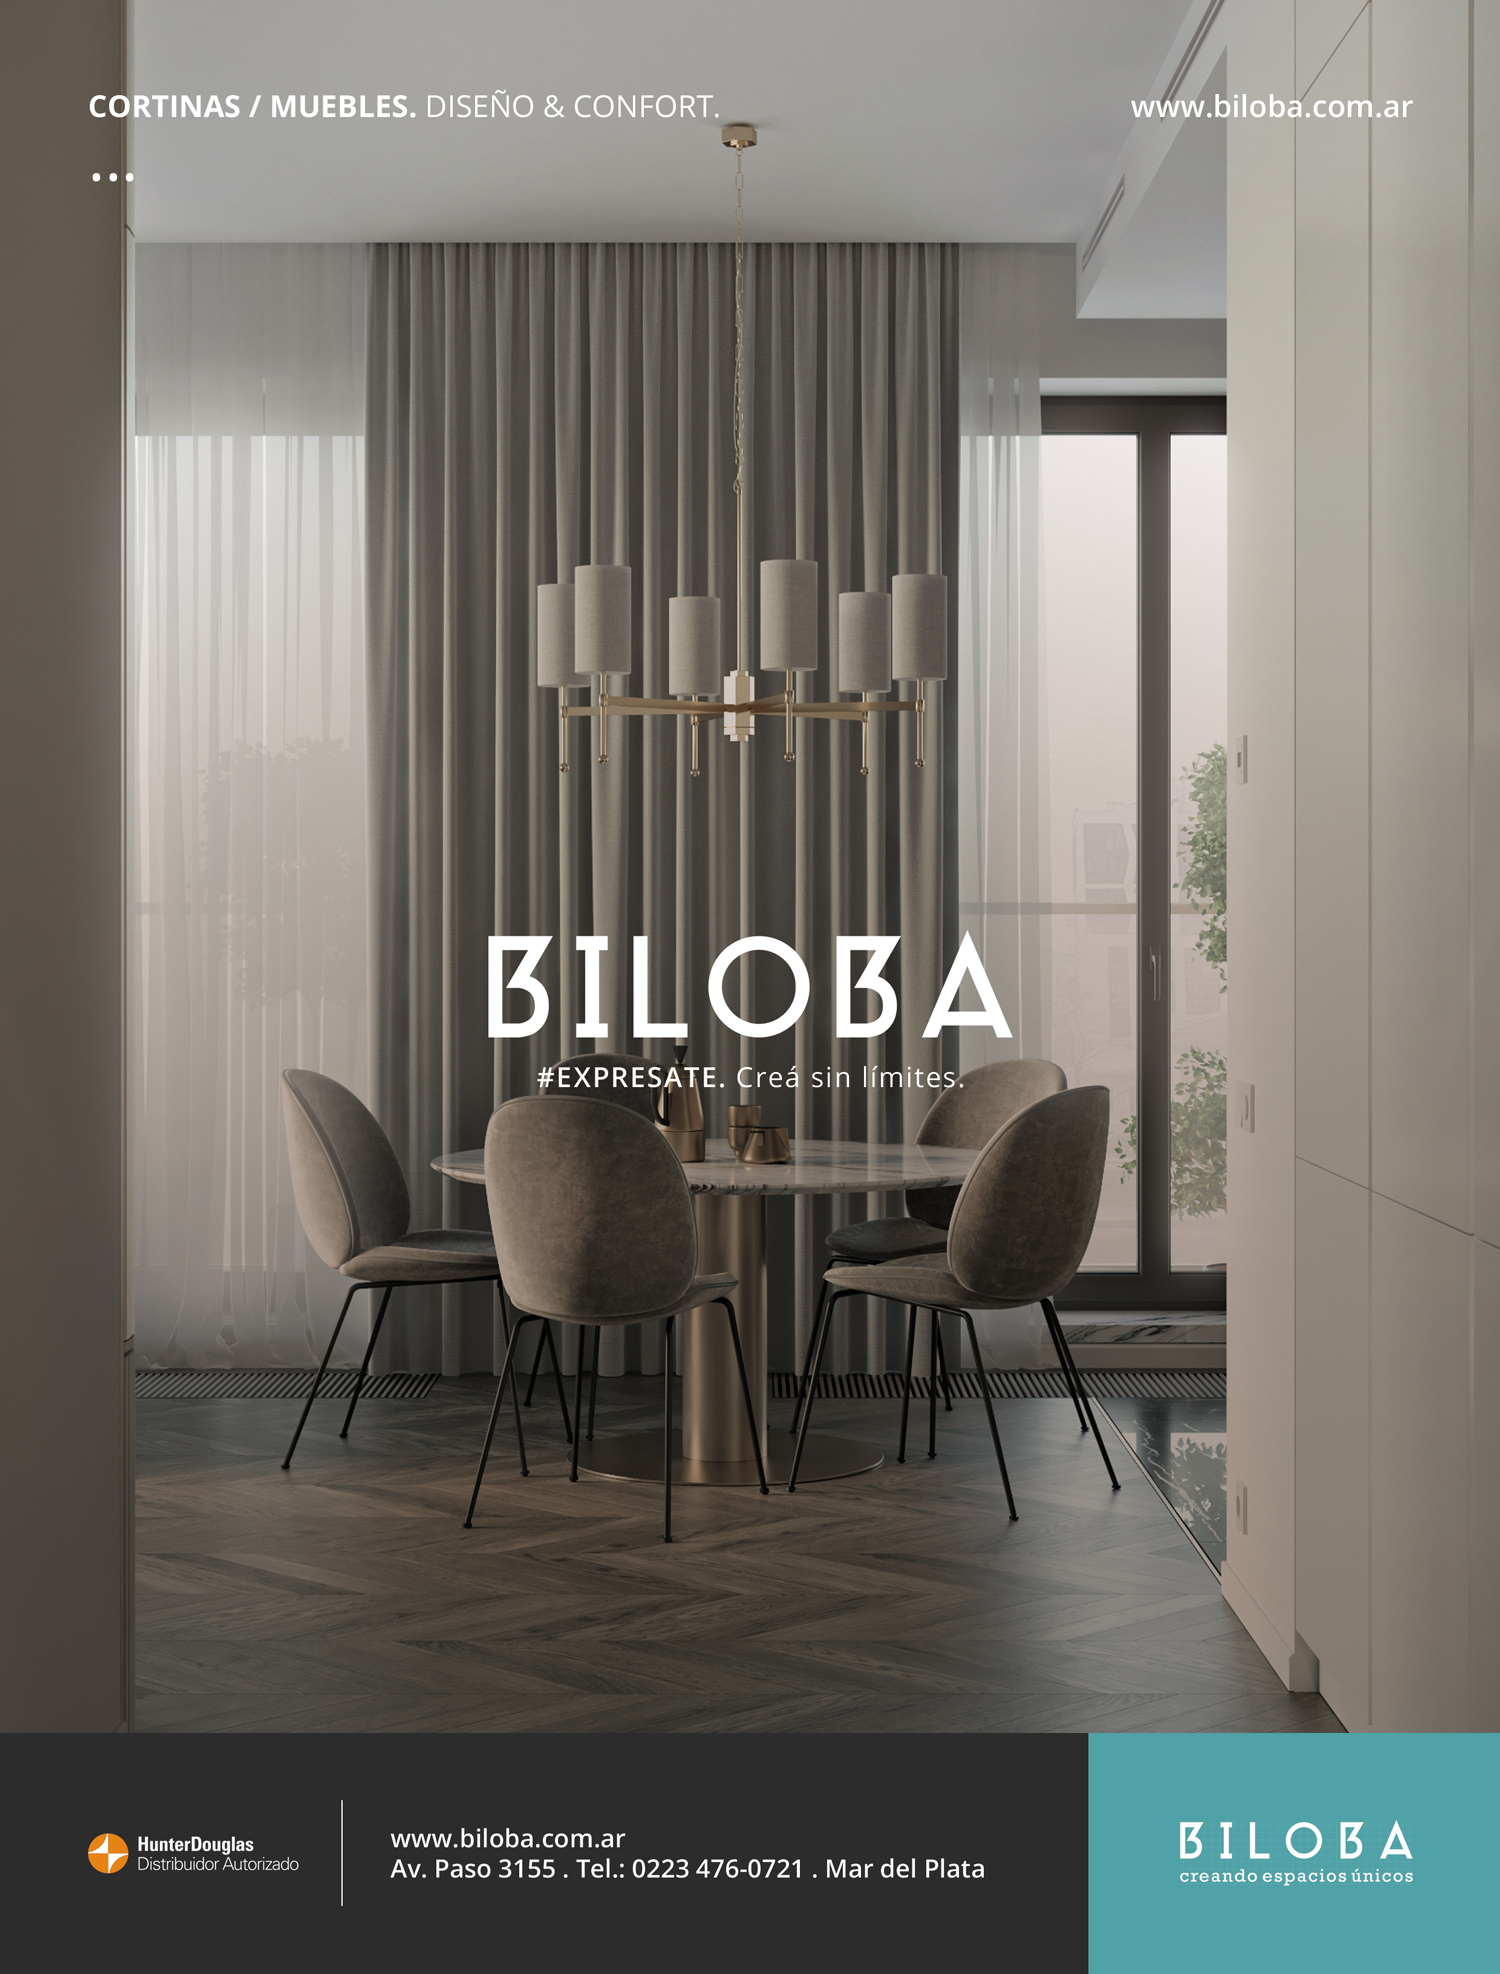 Diseño gráfico y producción publicitaria medio gráficos para BILOBA by UMM ideas SA